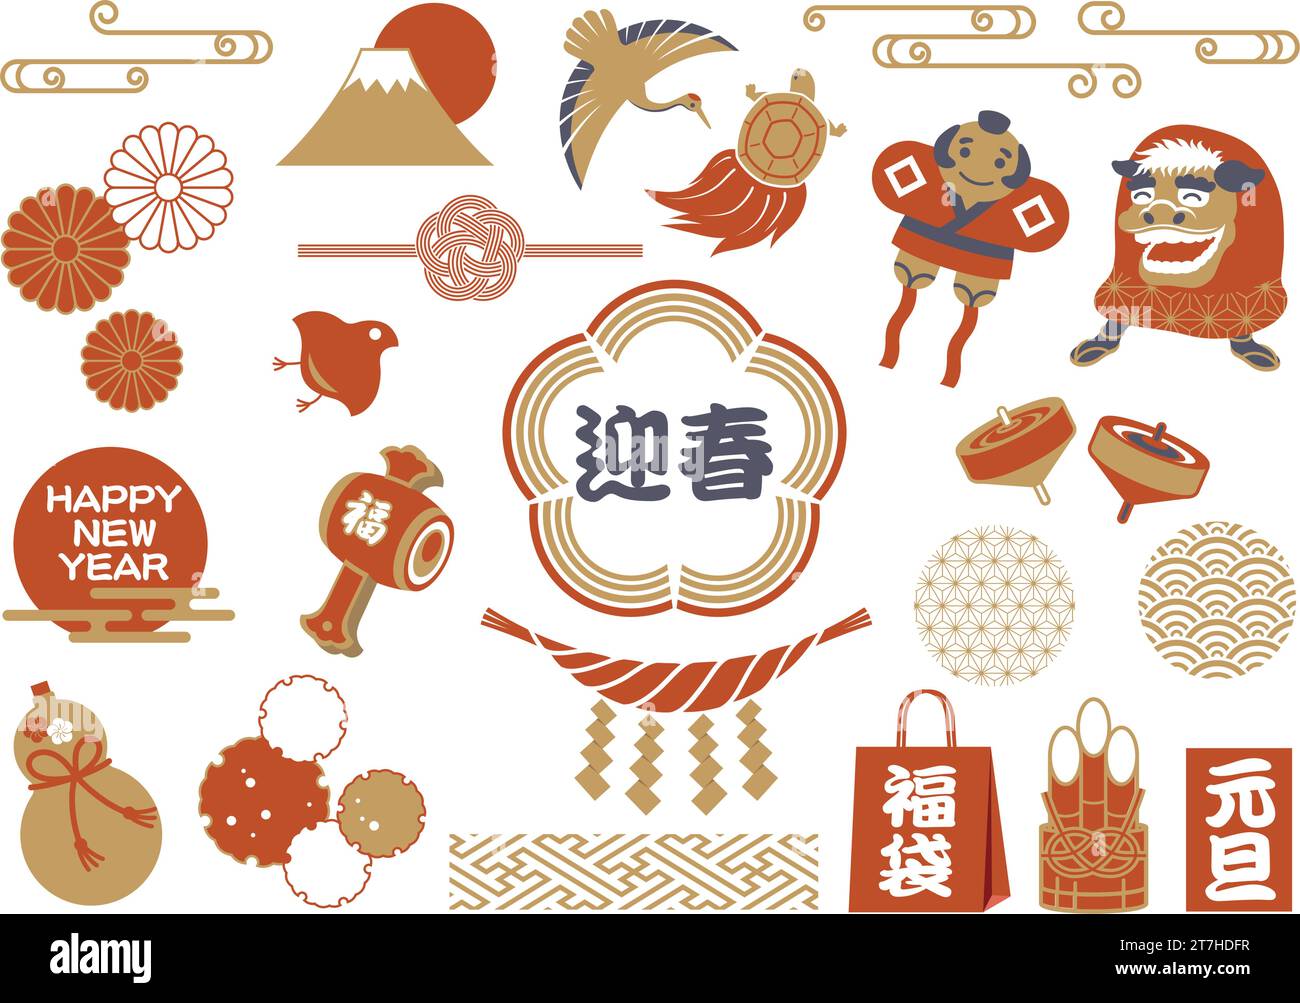 Elemento Vector Vintage dei saluti del Capodanno giapponese isolato su sfondo bianco. Traduzione di testi - buon anno. Il papà di Capodanno Illustrazione Vettoriale